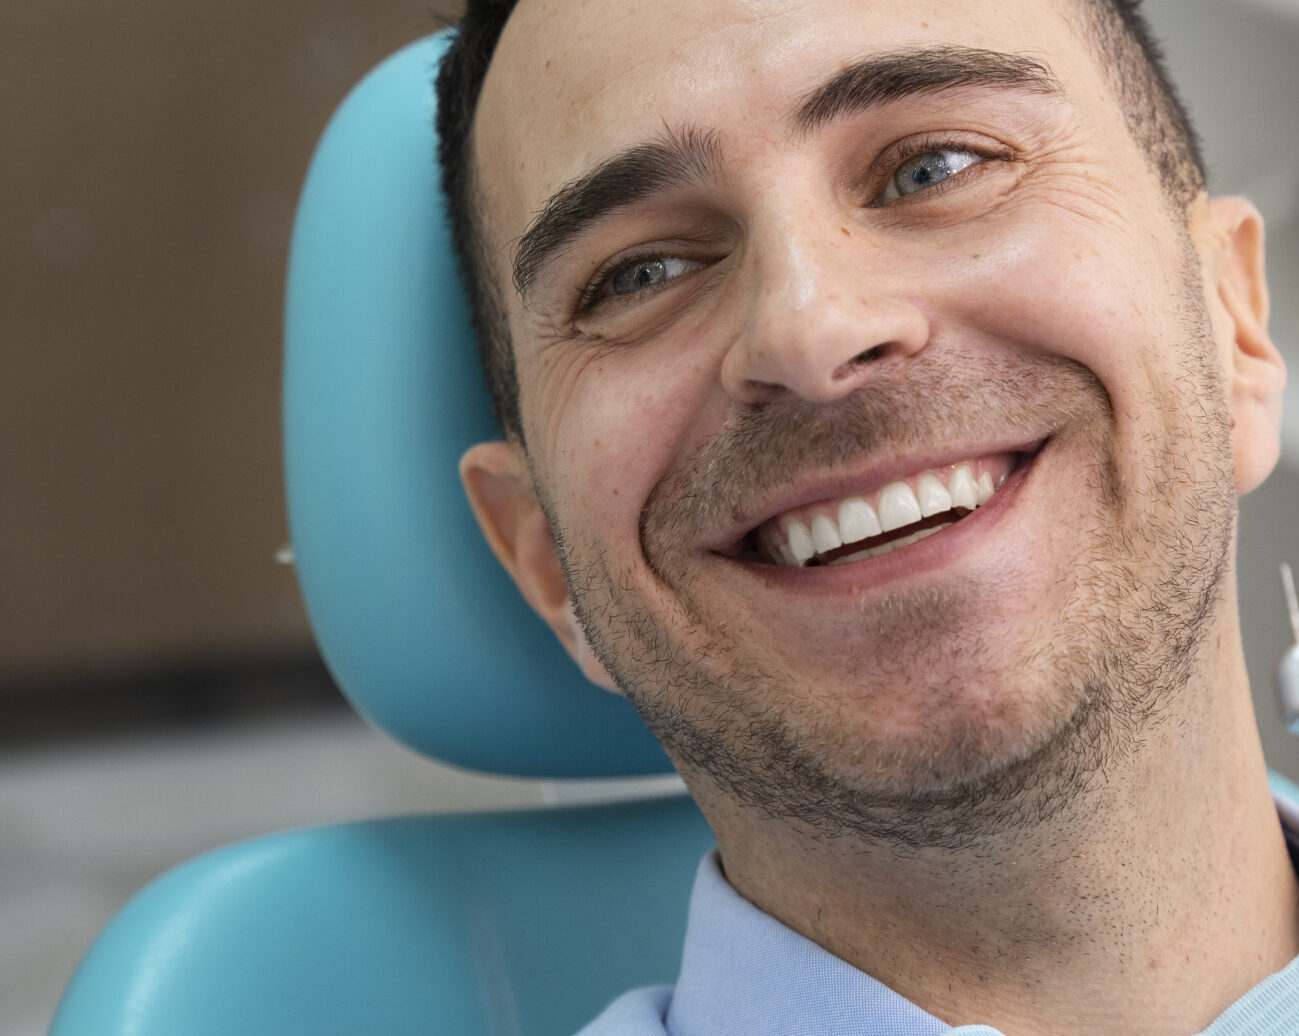 Quais as vantagens do implante dentário?